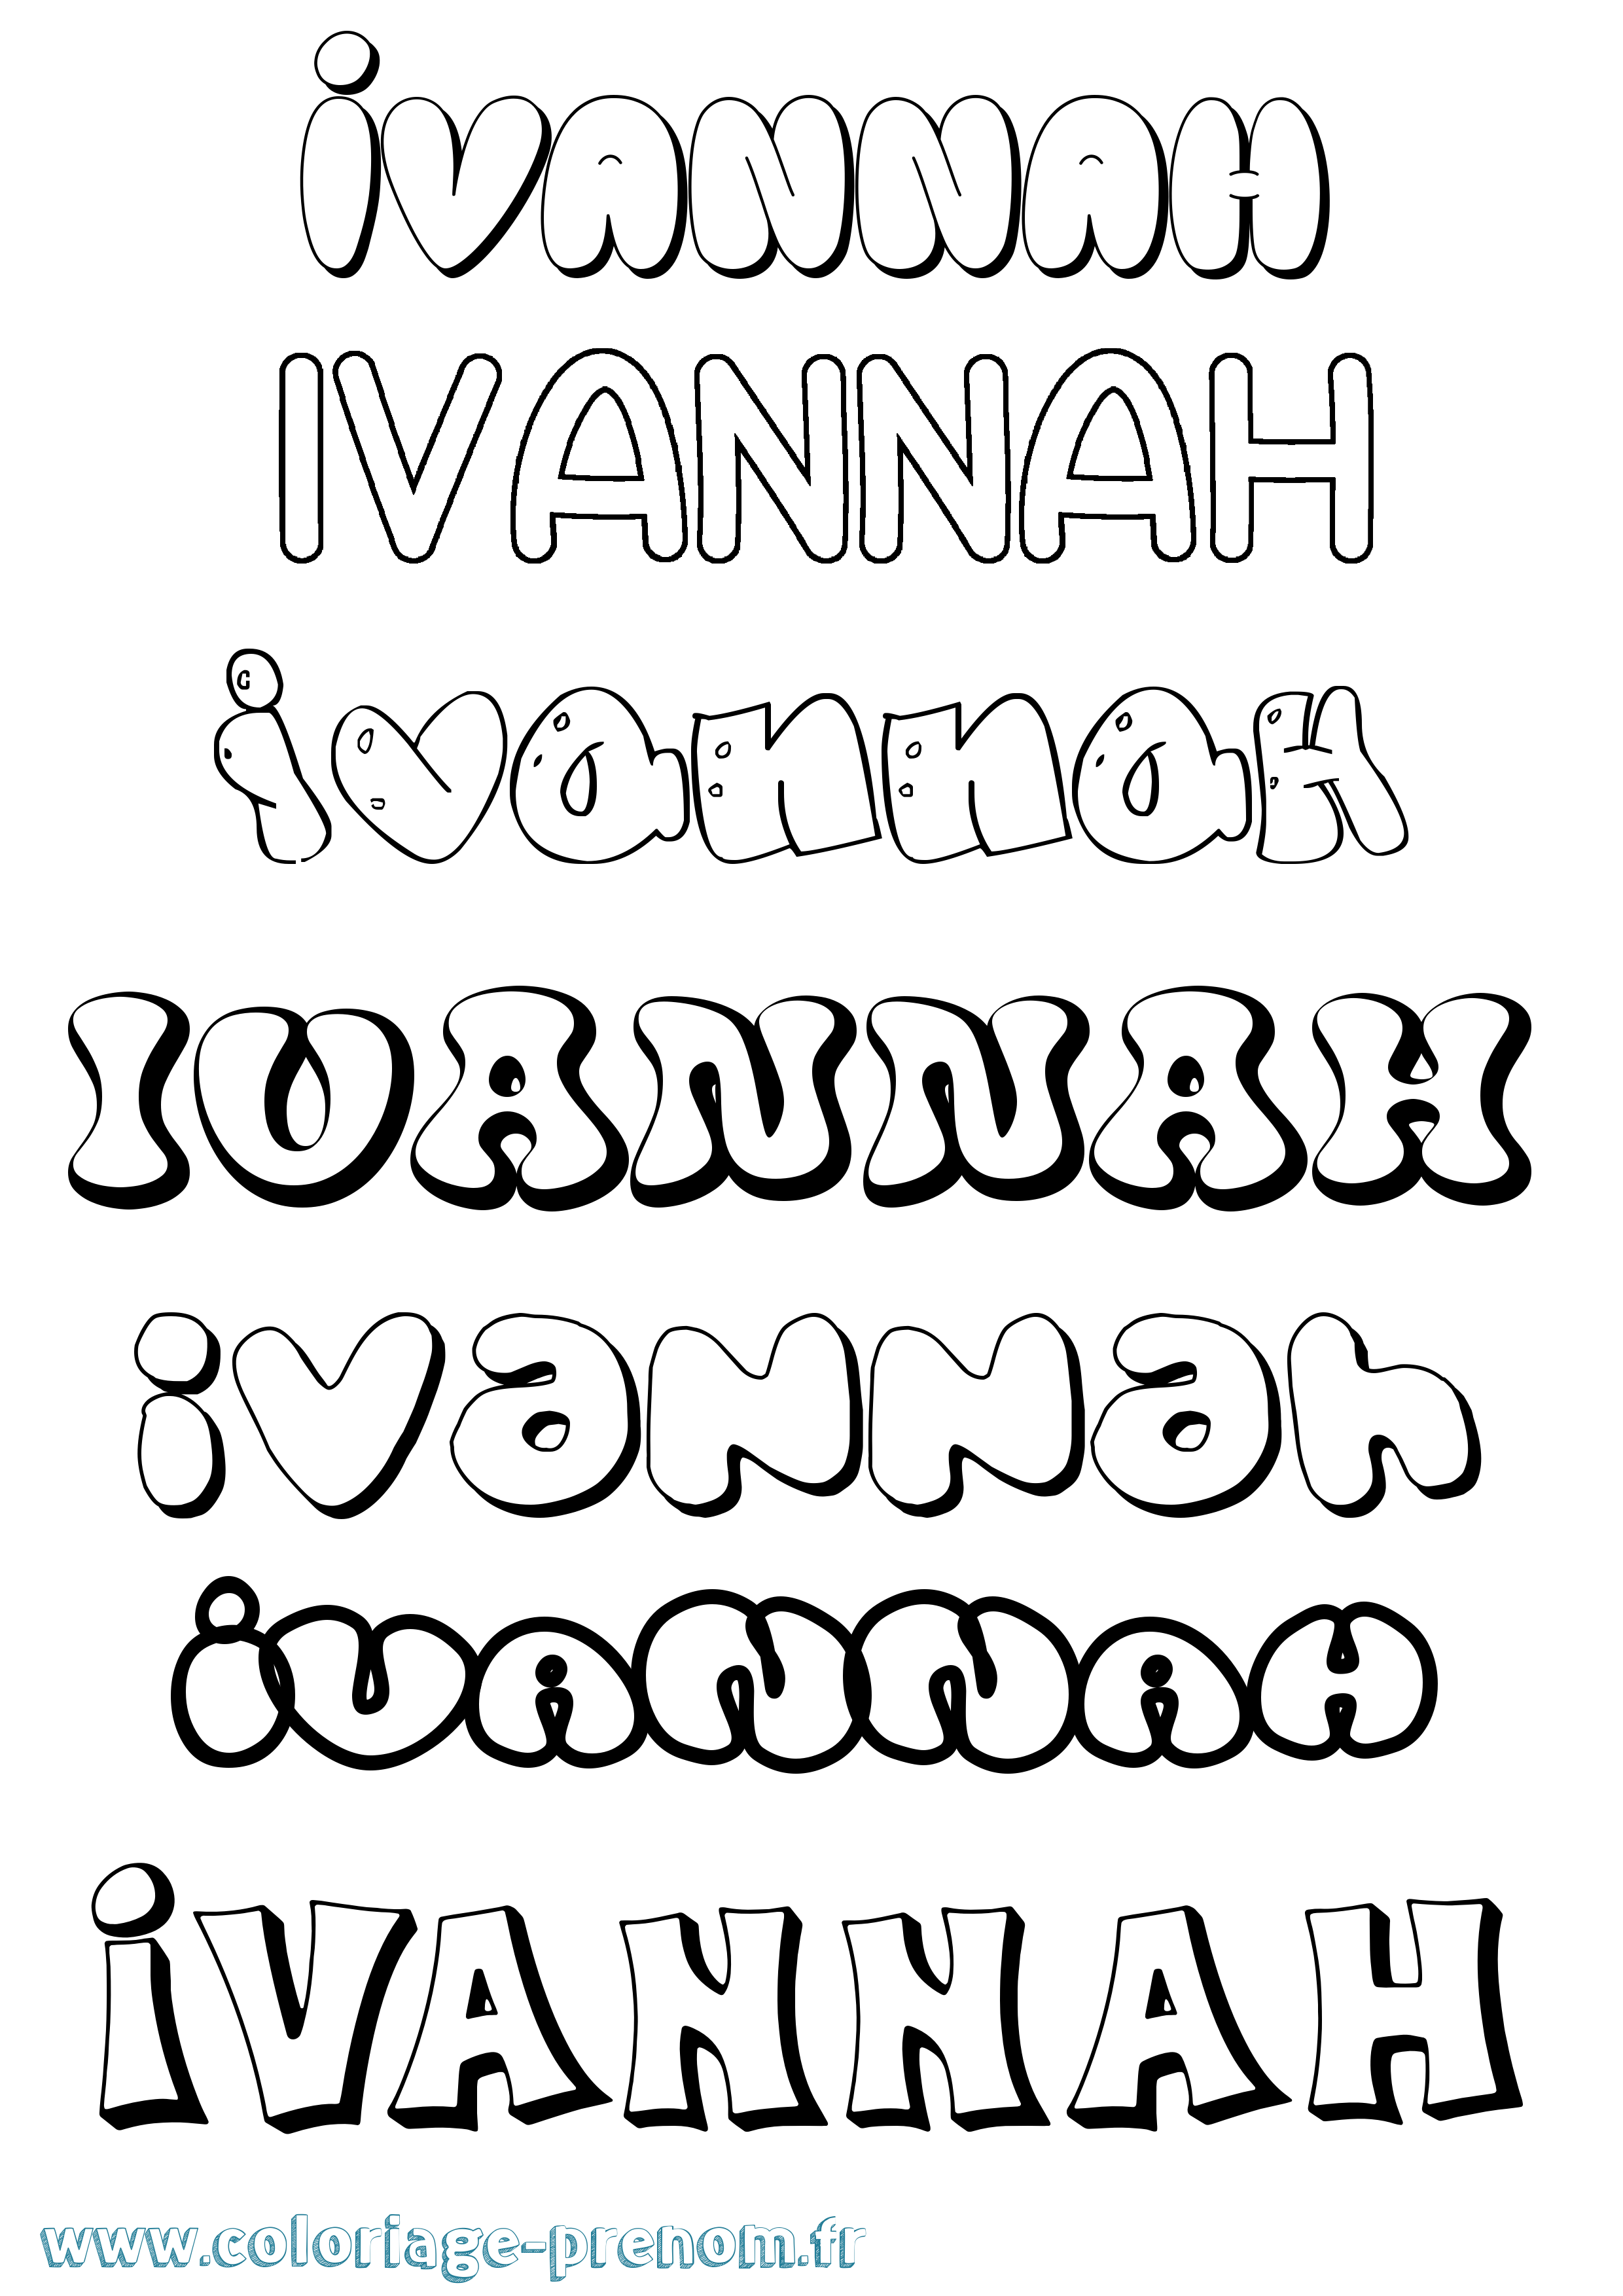 Coloriage prénom Ivannah Bubble